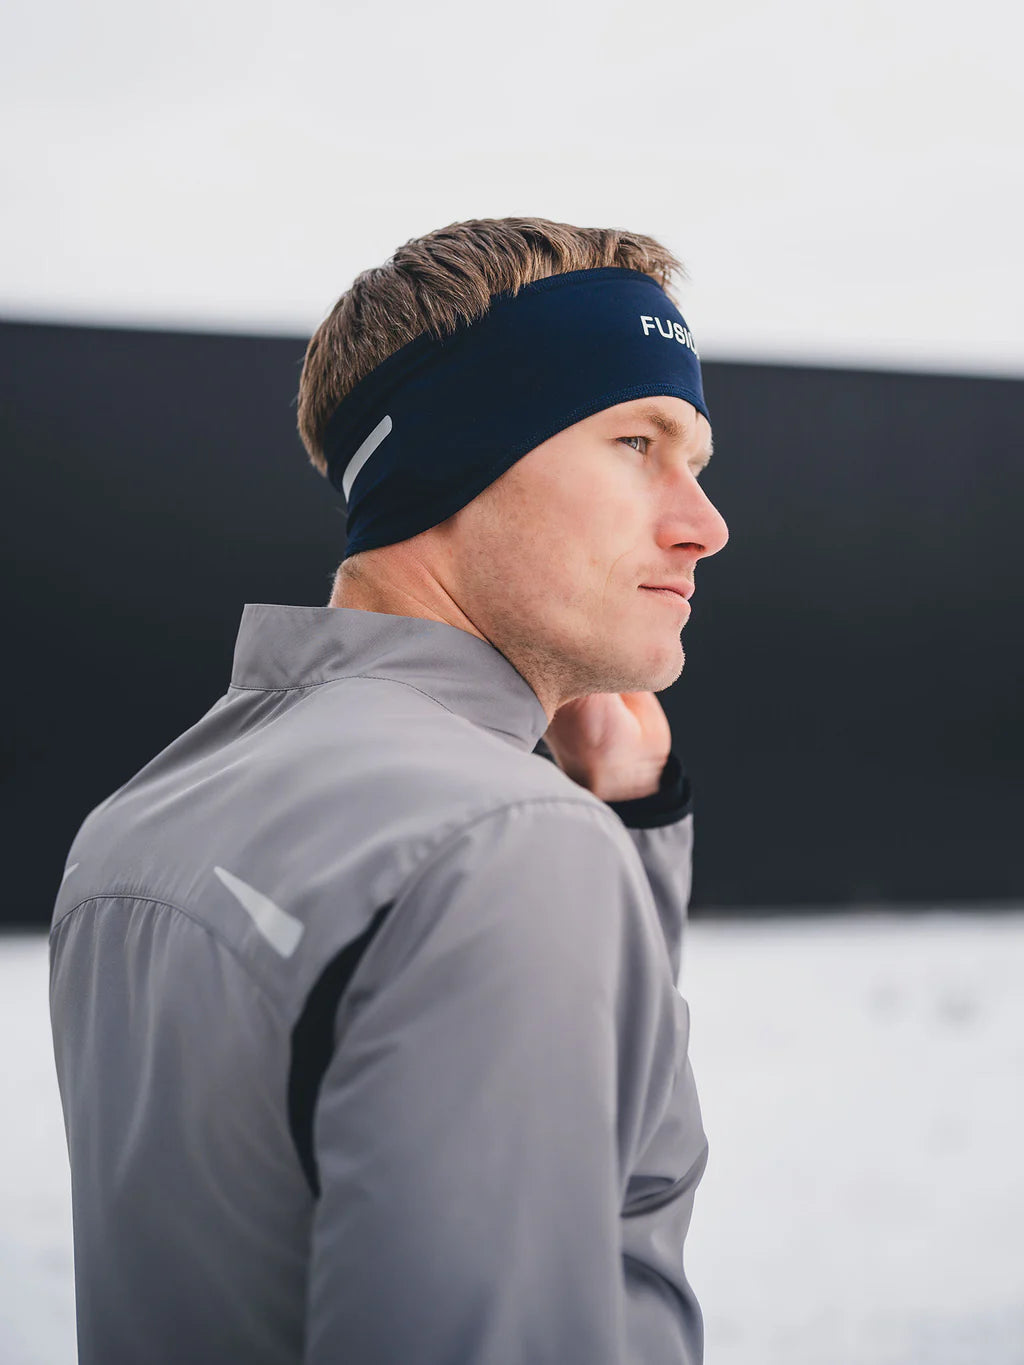 Fusion Navy headband on athlete